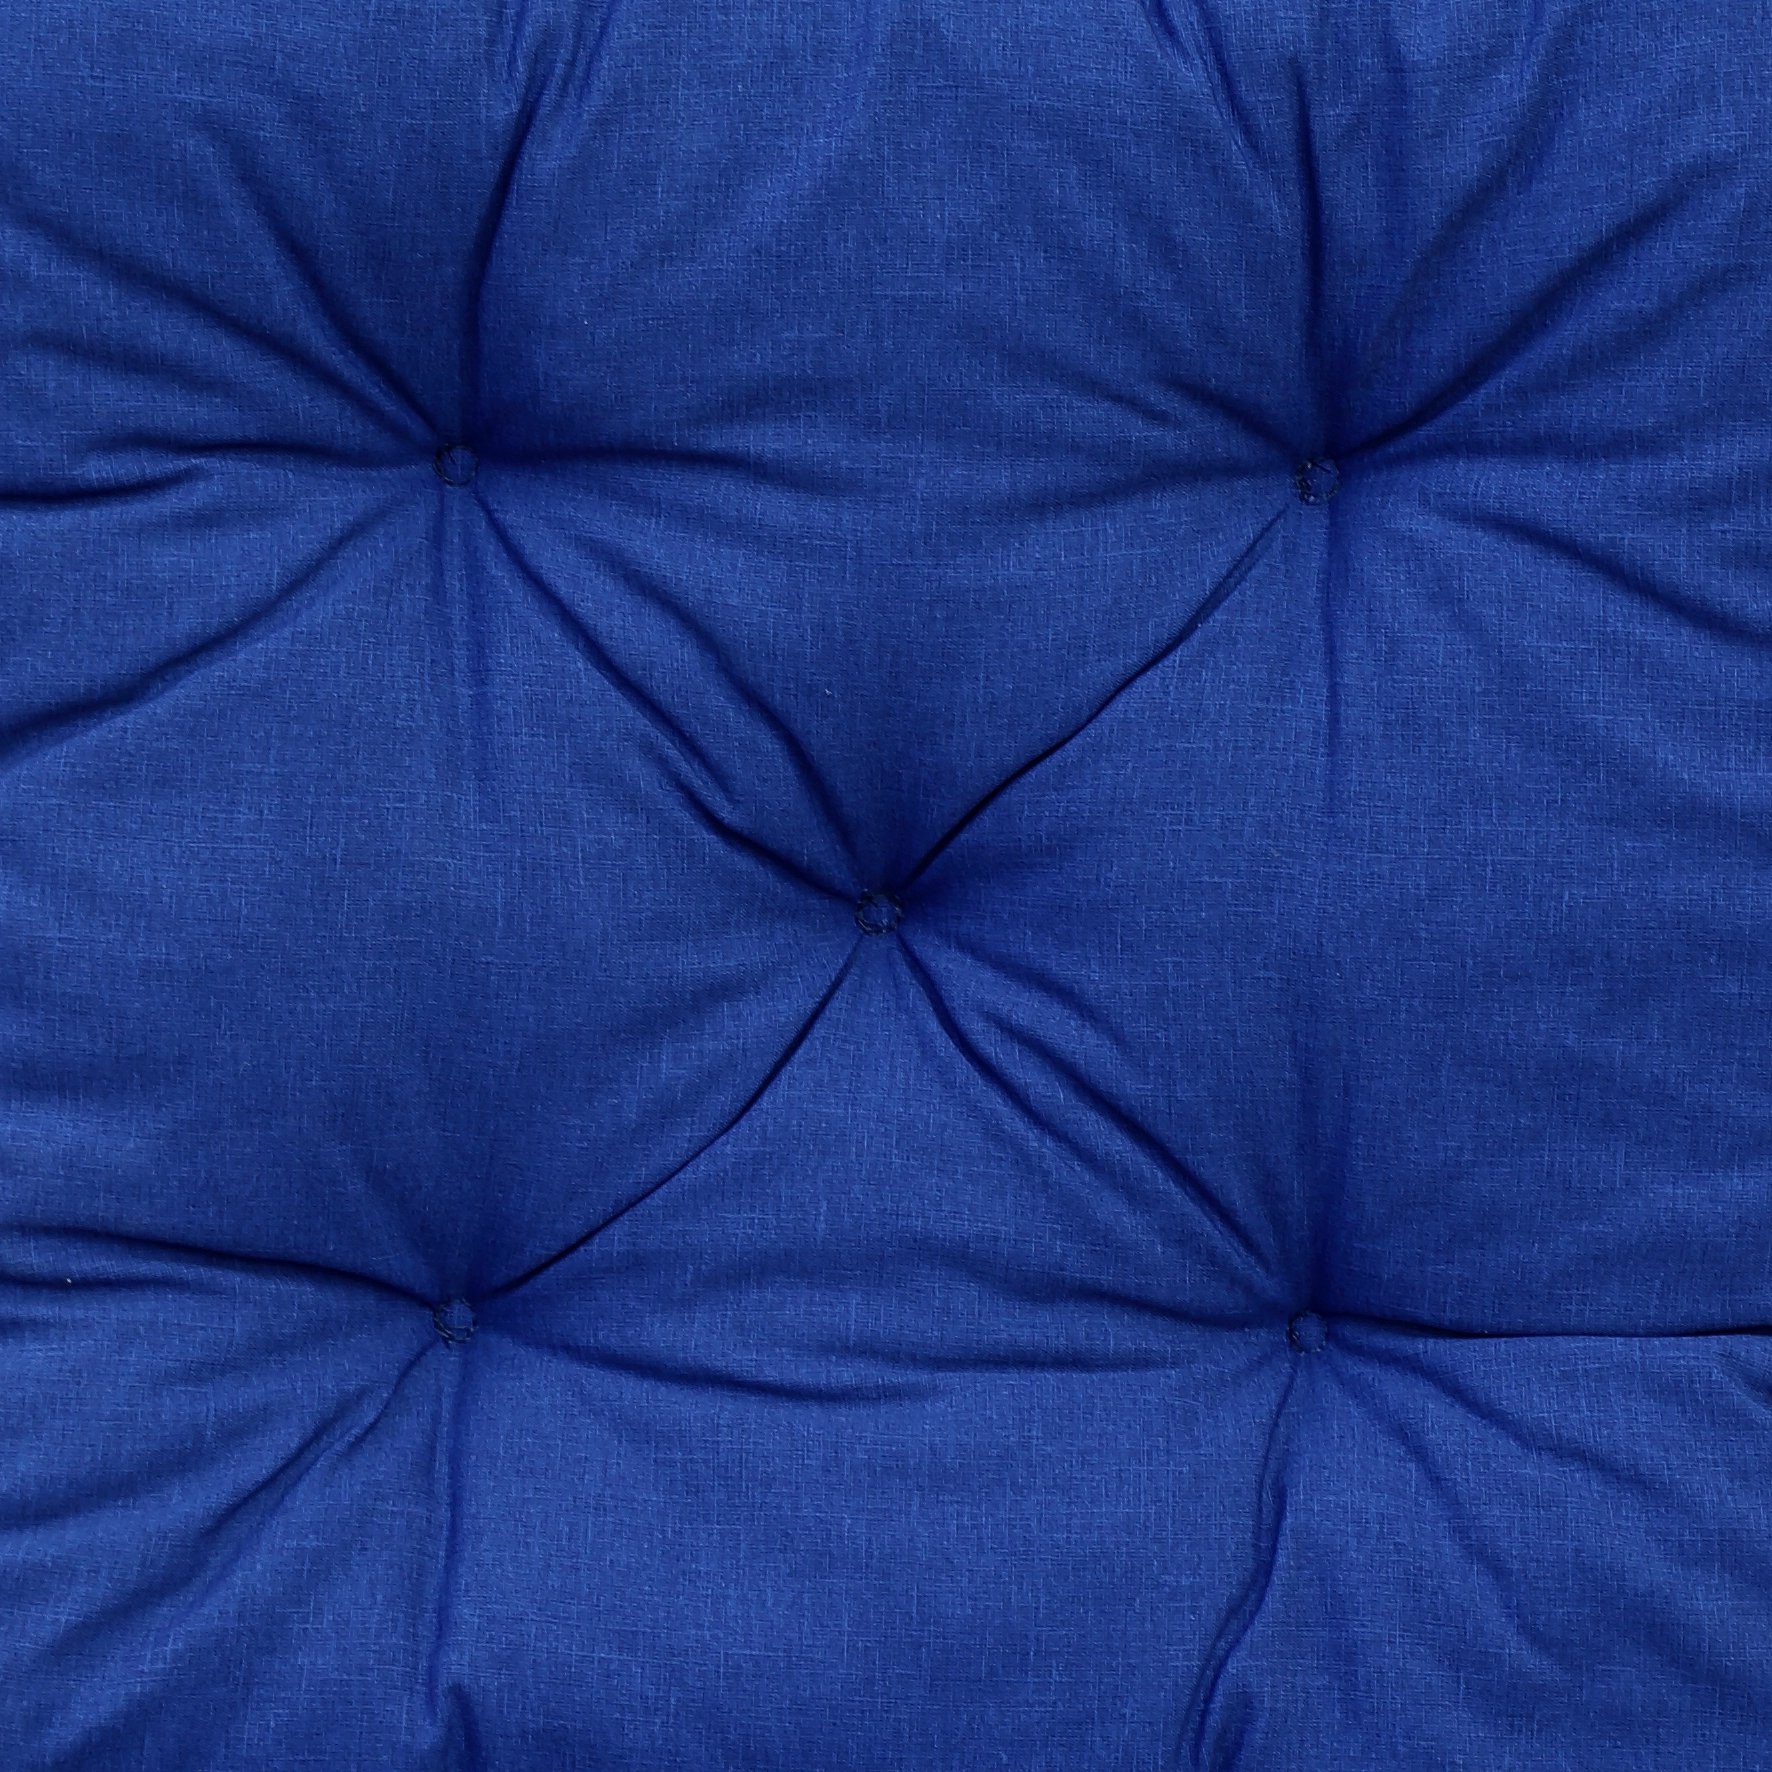 Home Feeling Palettenkissen 120x80cm//120x60cm, Stoff! Rückenteil, UV-beständiger Palettenkissen blau inkl